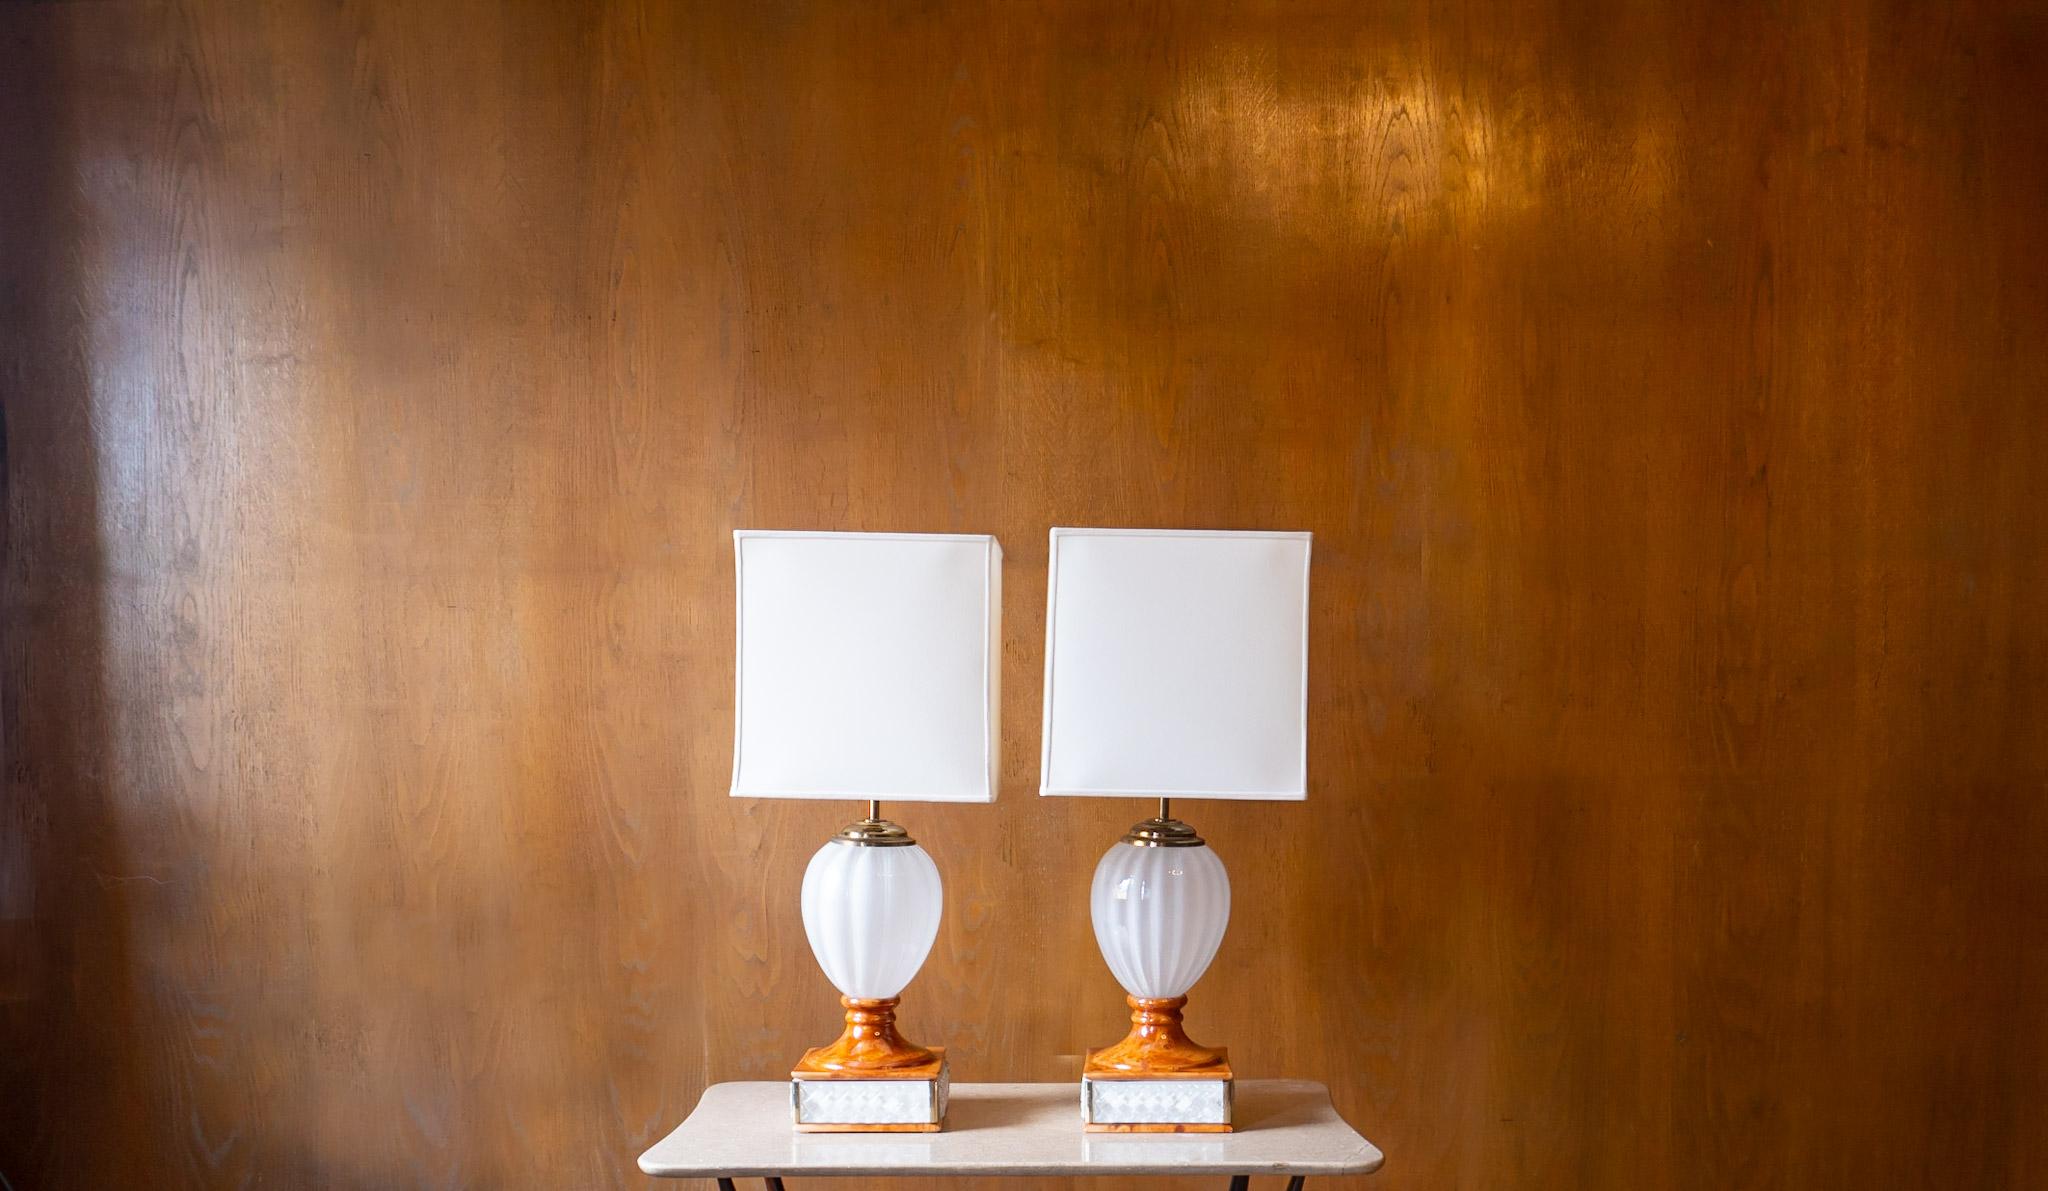 Hollywood Regency Tommaso Barbi Tischlampe, Keramik, Muranoglas, Italien 70er Jahre.

Ein seltenes Set von 2 beeindruckenden Tischlampen von Tommaso Barbi, handgefertigt aus glänzender brauner Keramik und weißem Murano-Milchglas. Der quadratische